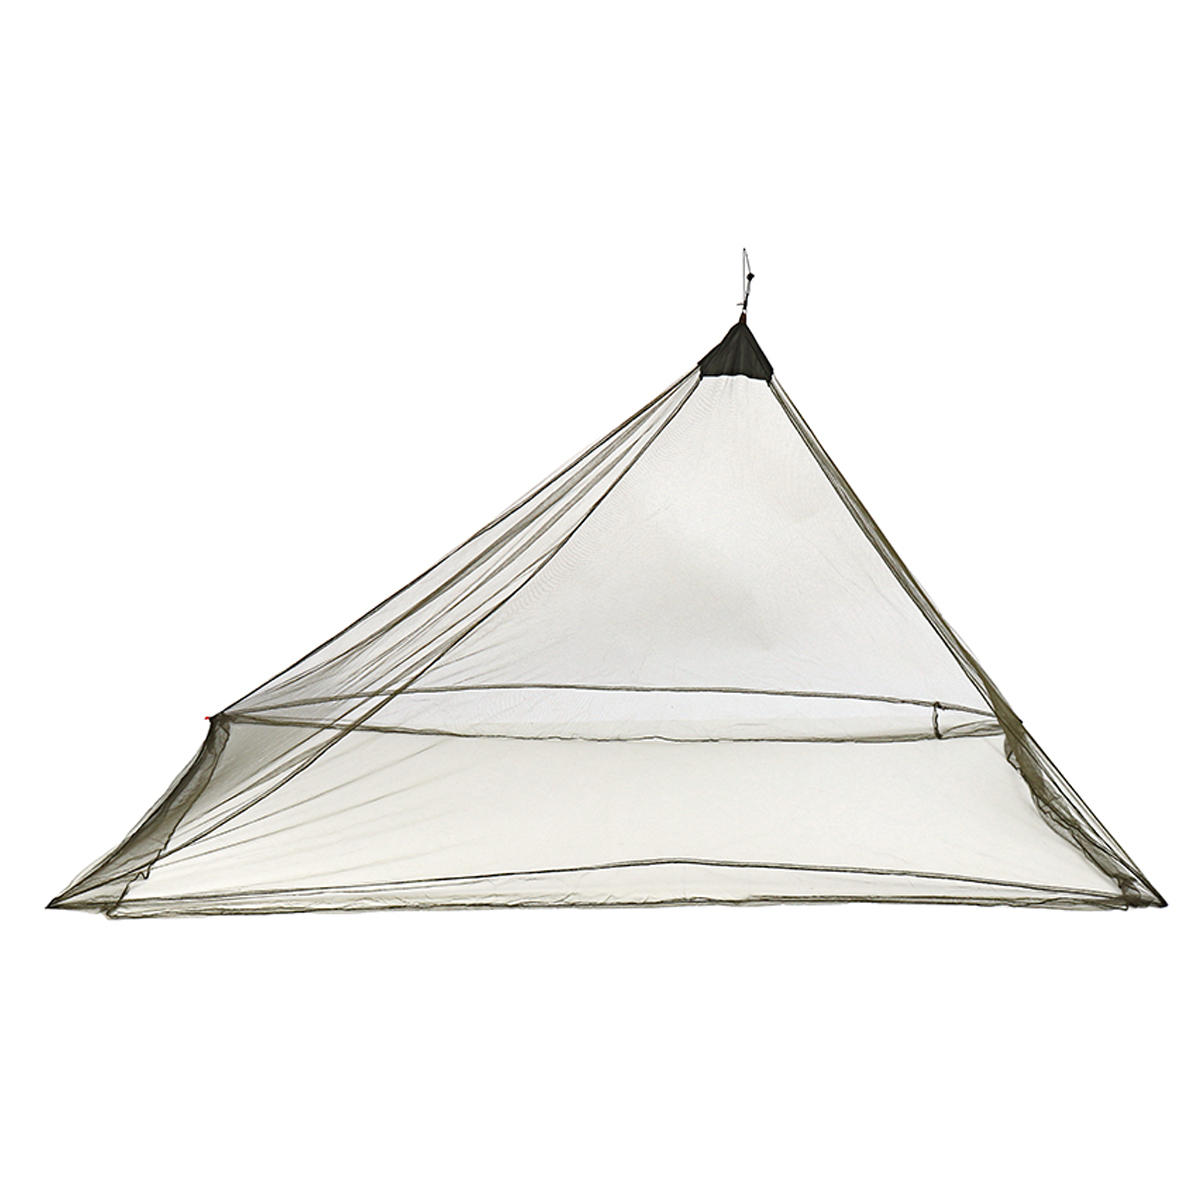 شبكة ضد البعوض خفيفة ومحمولة للتخييم، خيمة ضد البعوض في الهواء الطلق، ستارة ضد البعوض.